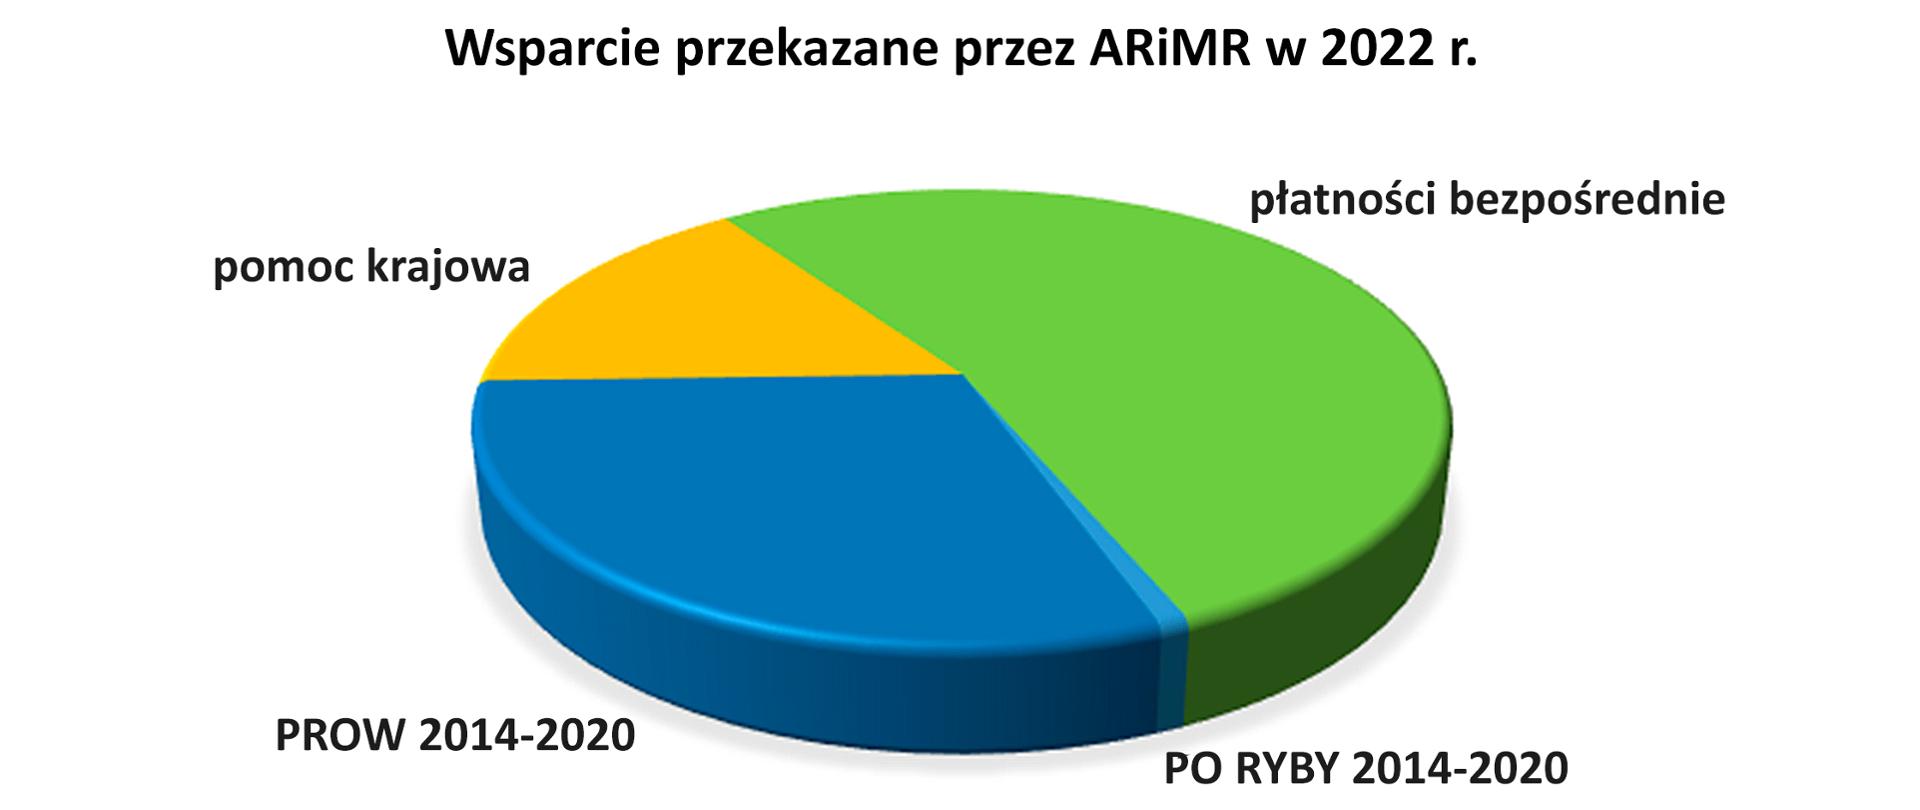 Wsparcie przekazane przez ARiMR w 2022 roku wykres